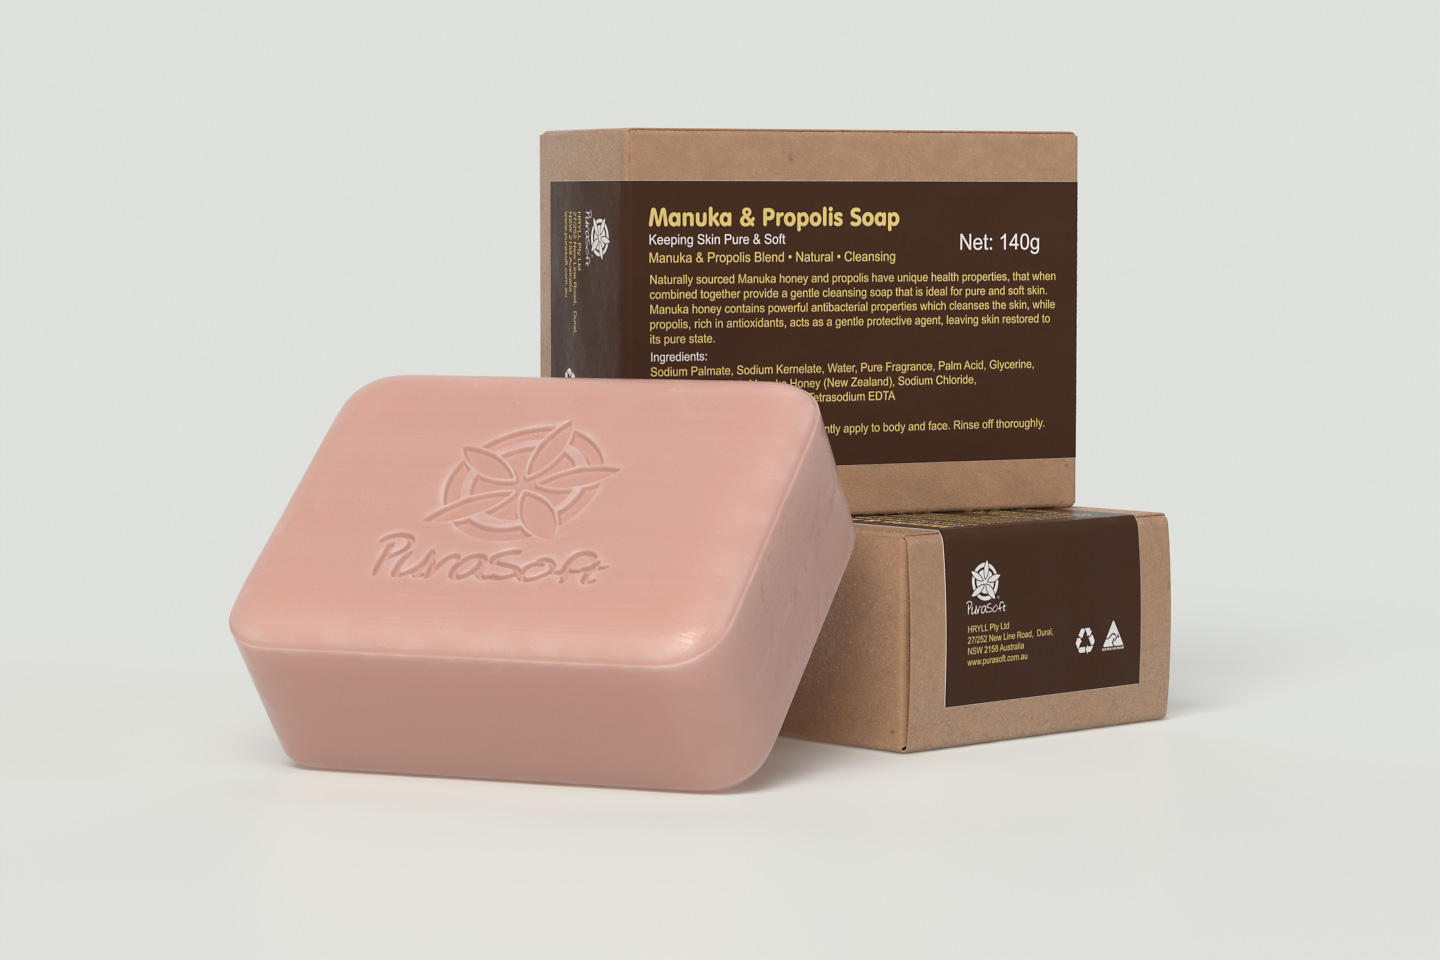 Manuka Propolis Soap Box v2-2.jpg